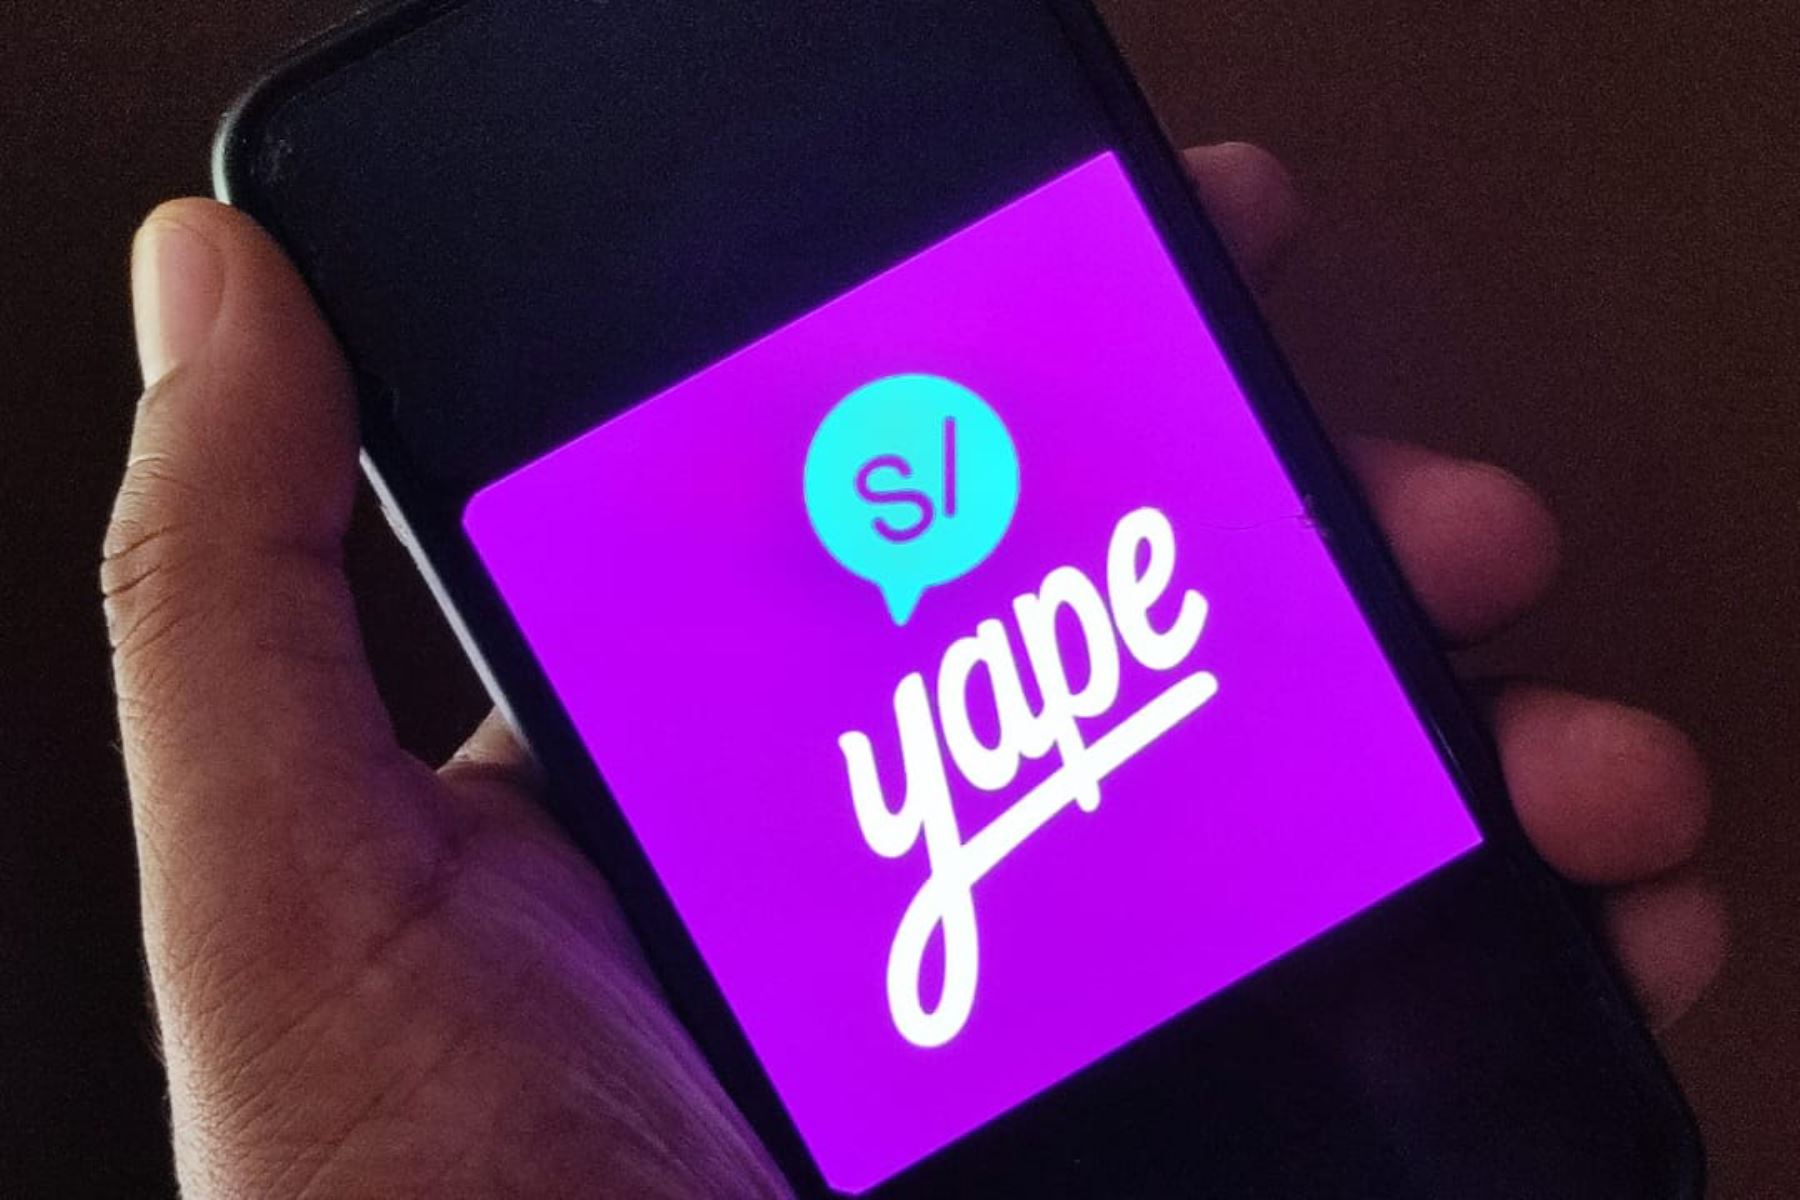 Yape confirma que continuará siendo gratuita para los usuarios